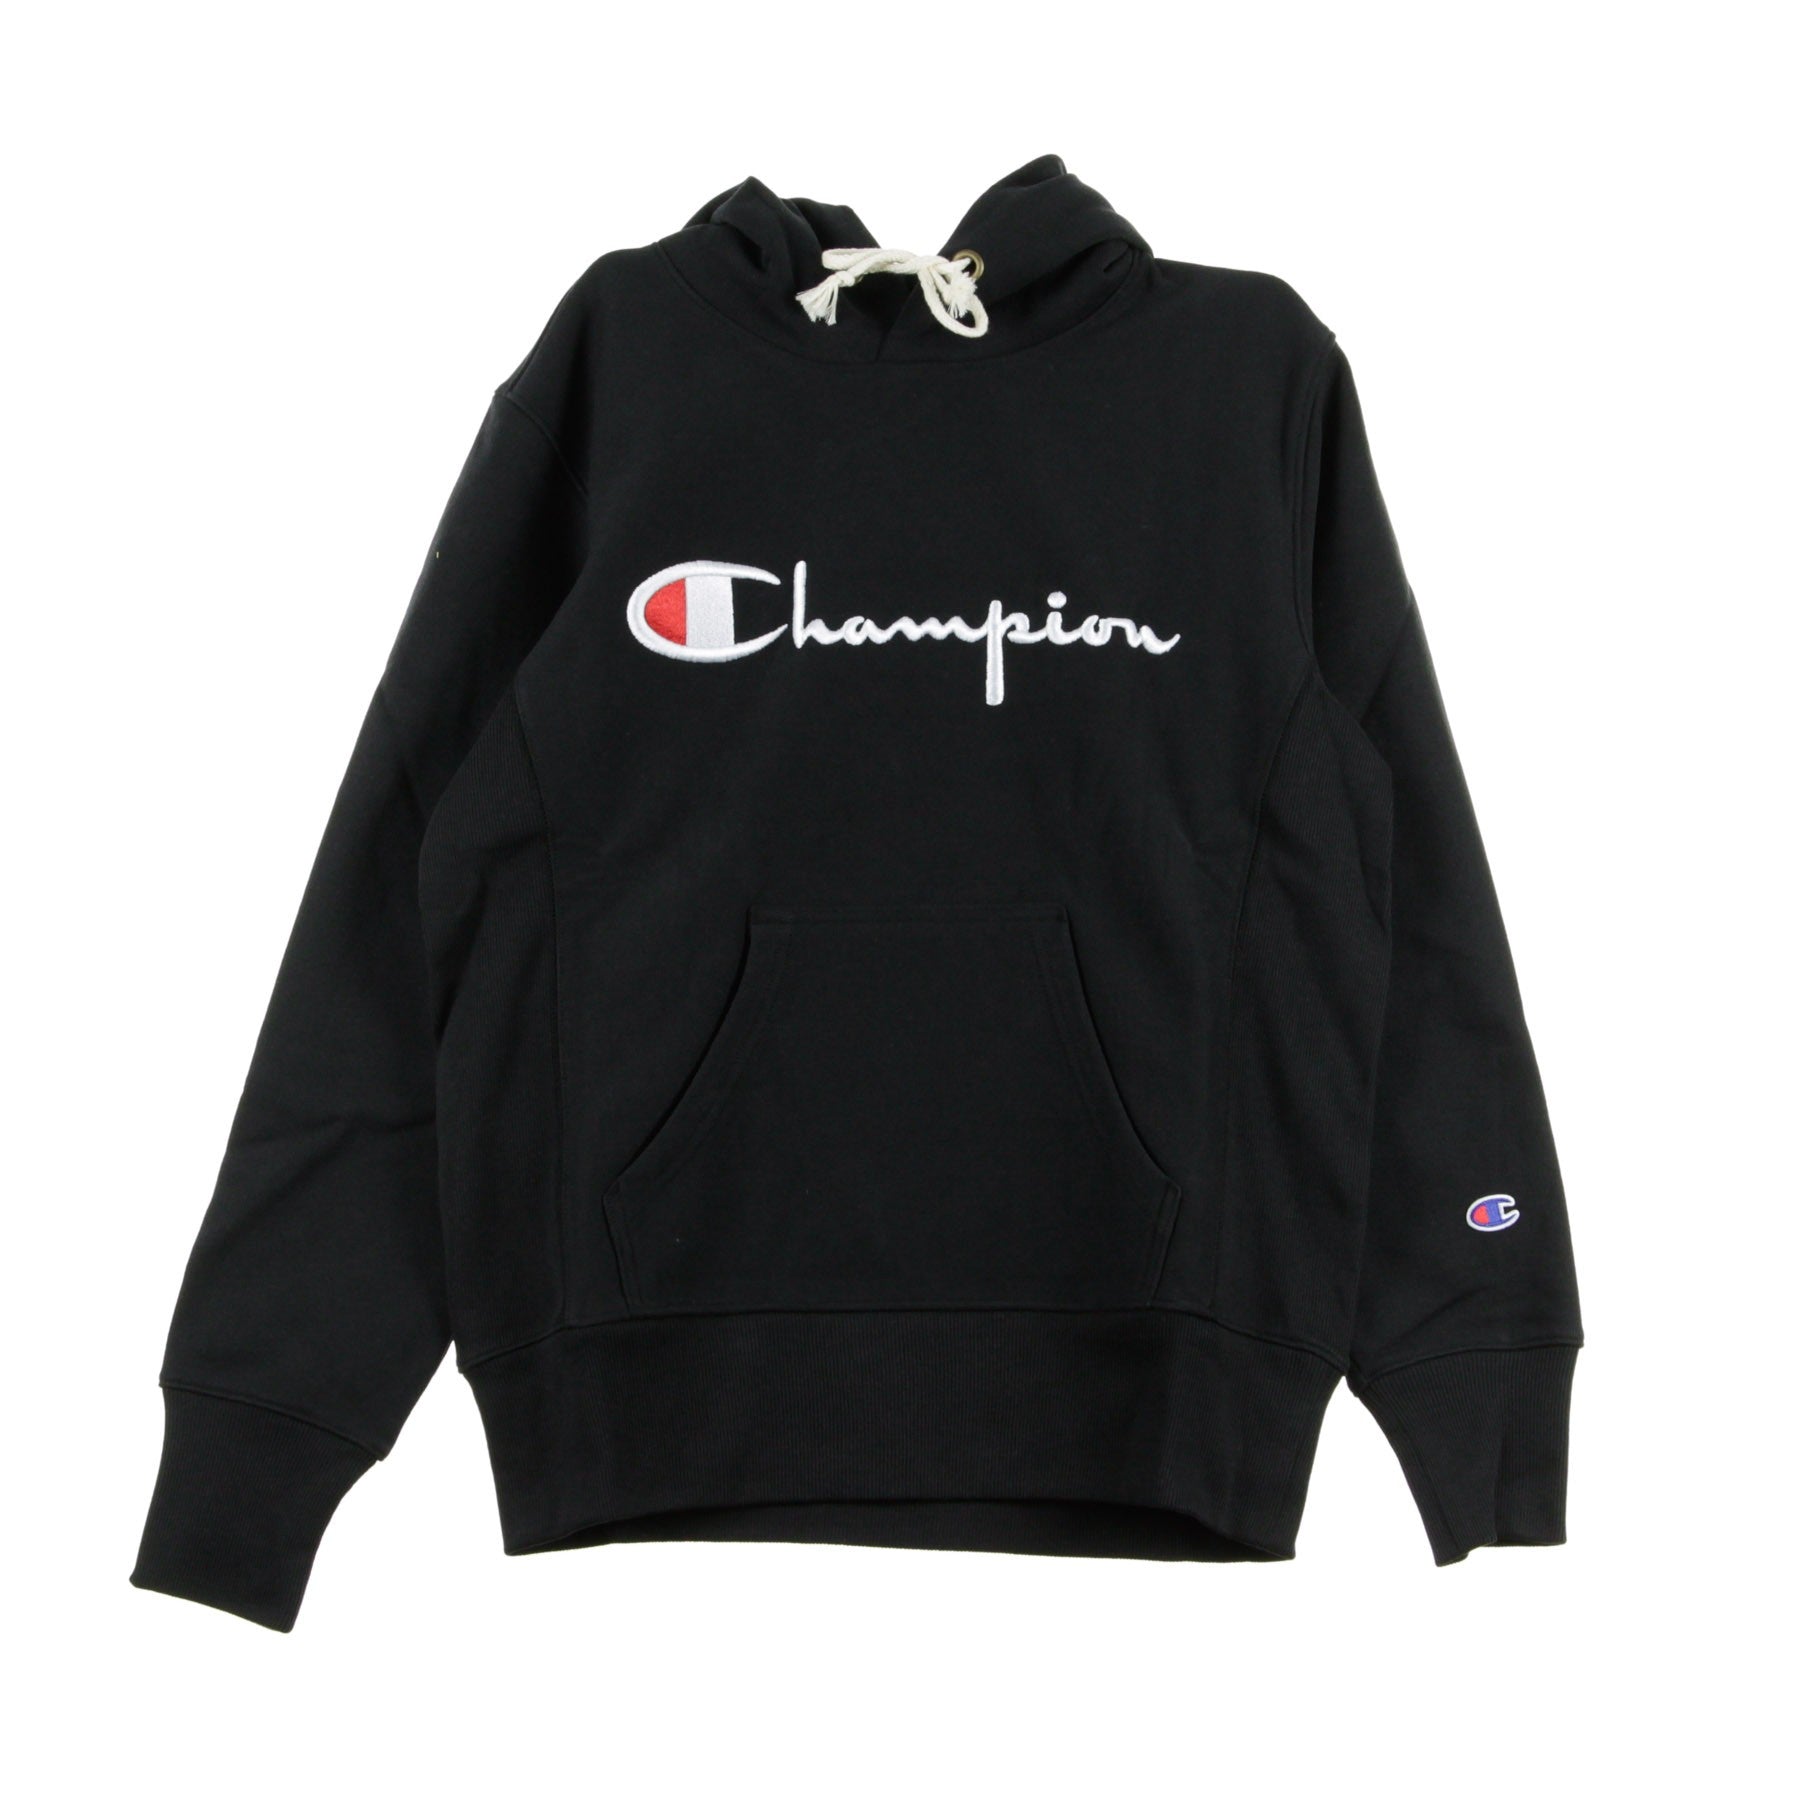 Champion, Felpa Cappuccio Uomo Hooded Sweatshirt, Black